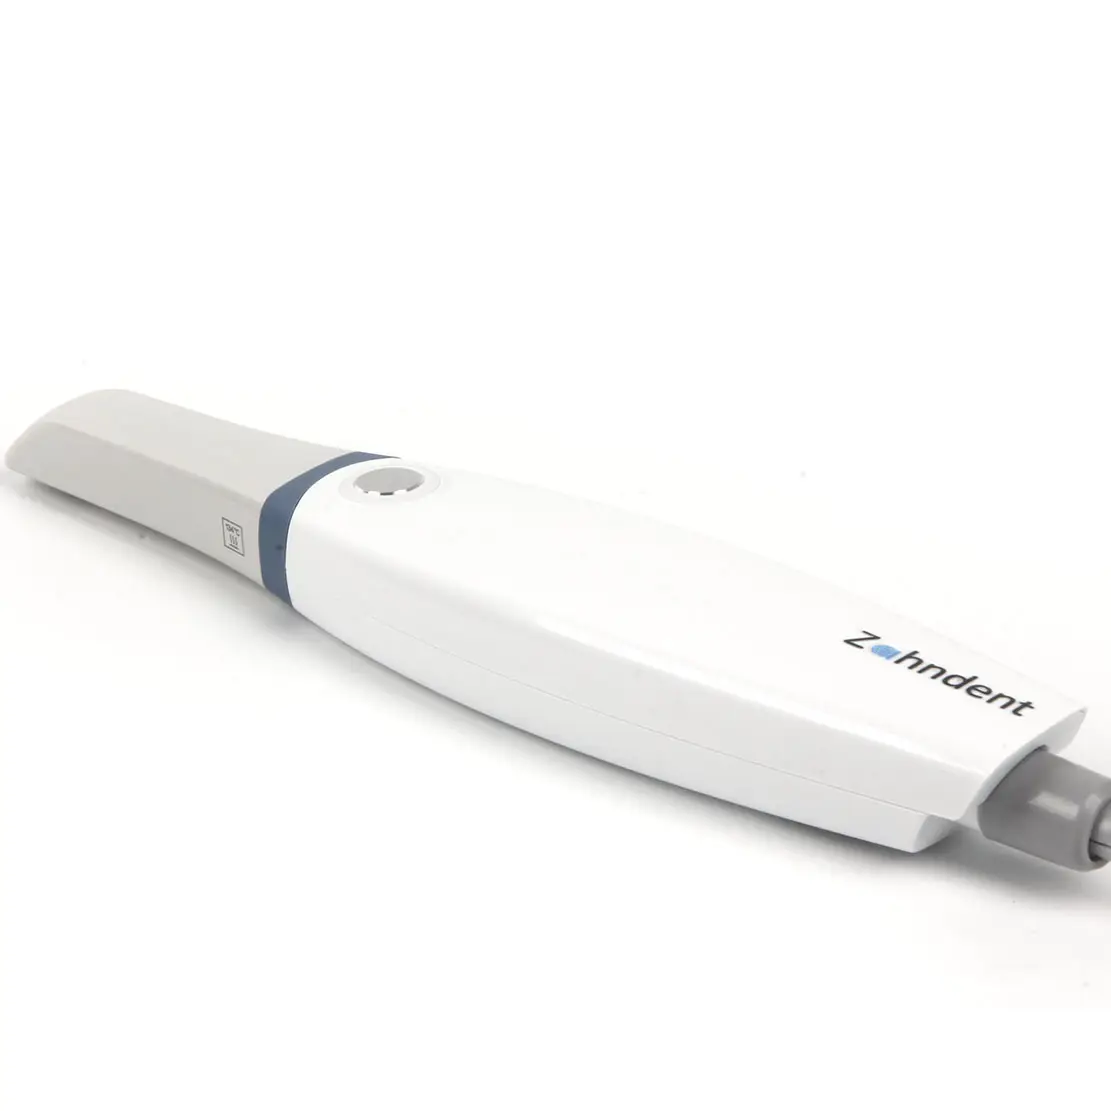 Zahndent 80 mm/giây tốc độ quét nha khoa thiết bị hình ảnh intraoral Scanner cho phòng khám Nha khoa